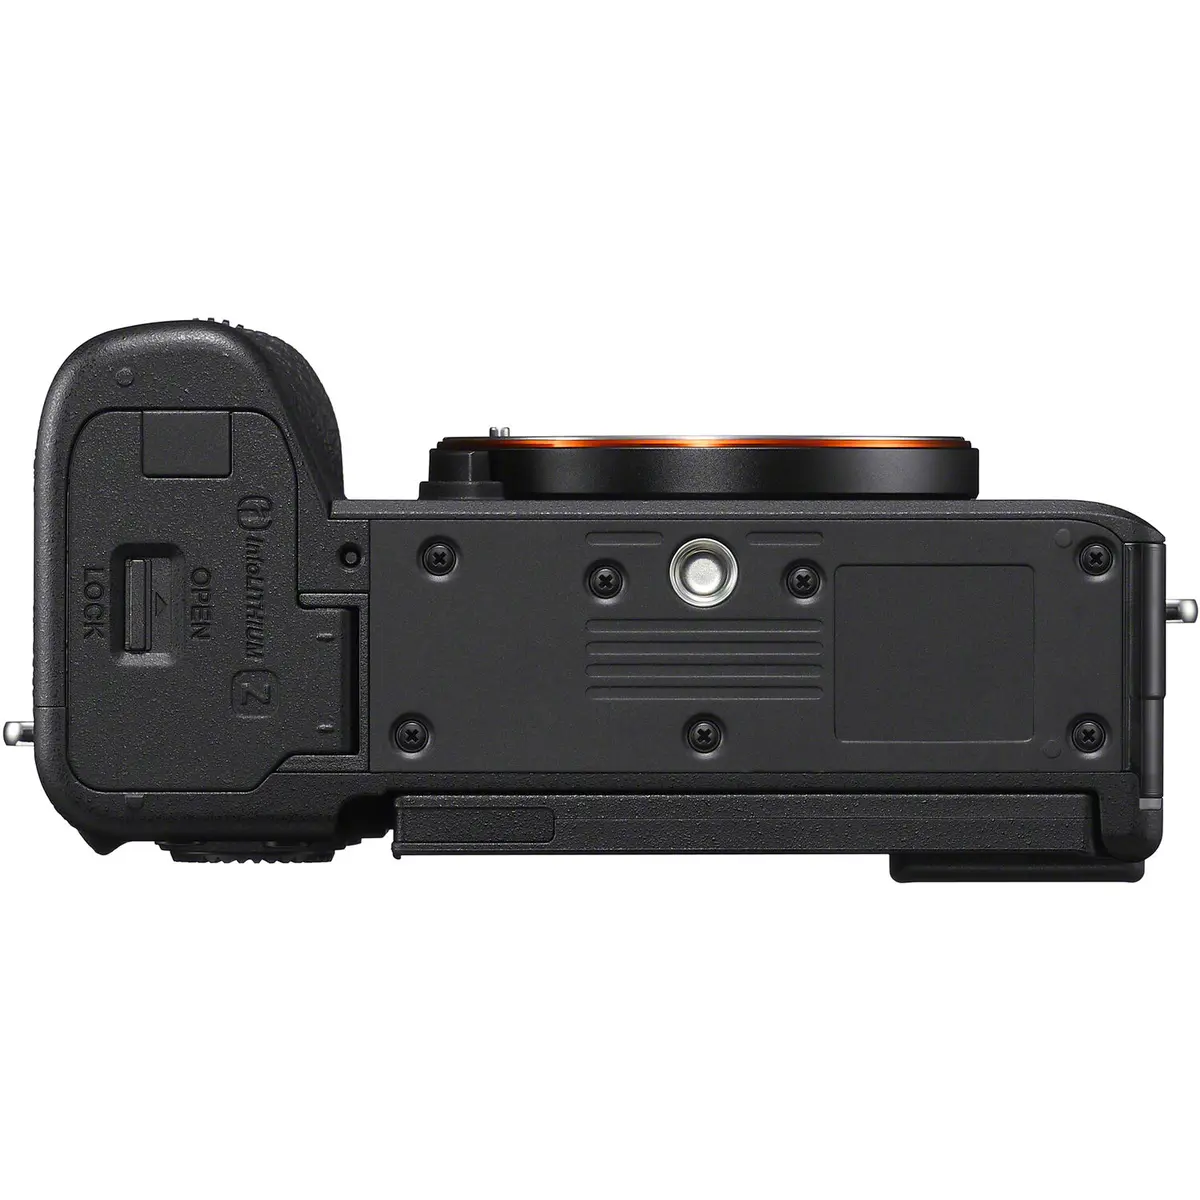 2. Sony A7C II Kit (28-60) Black